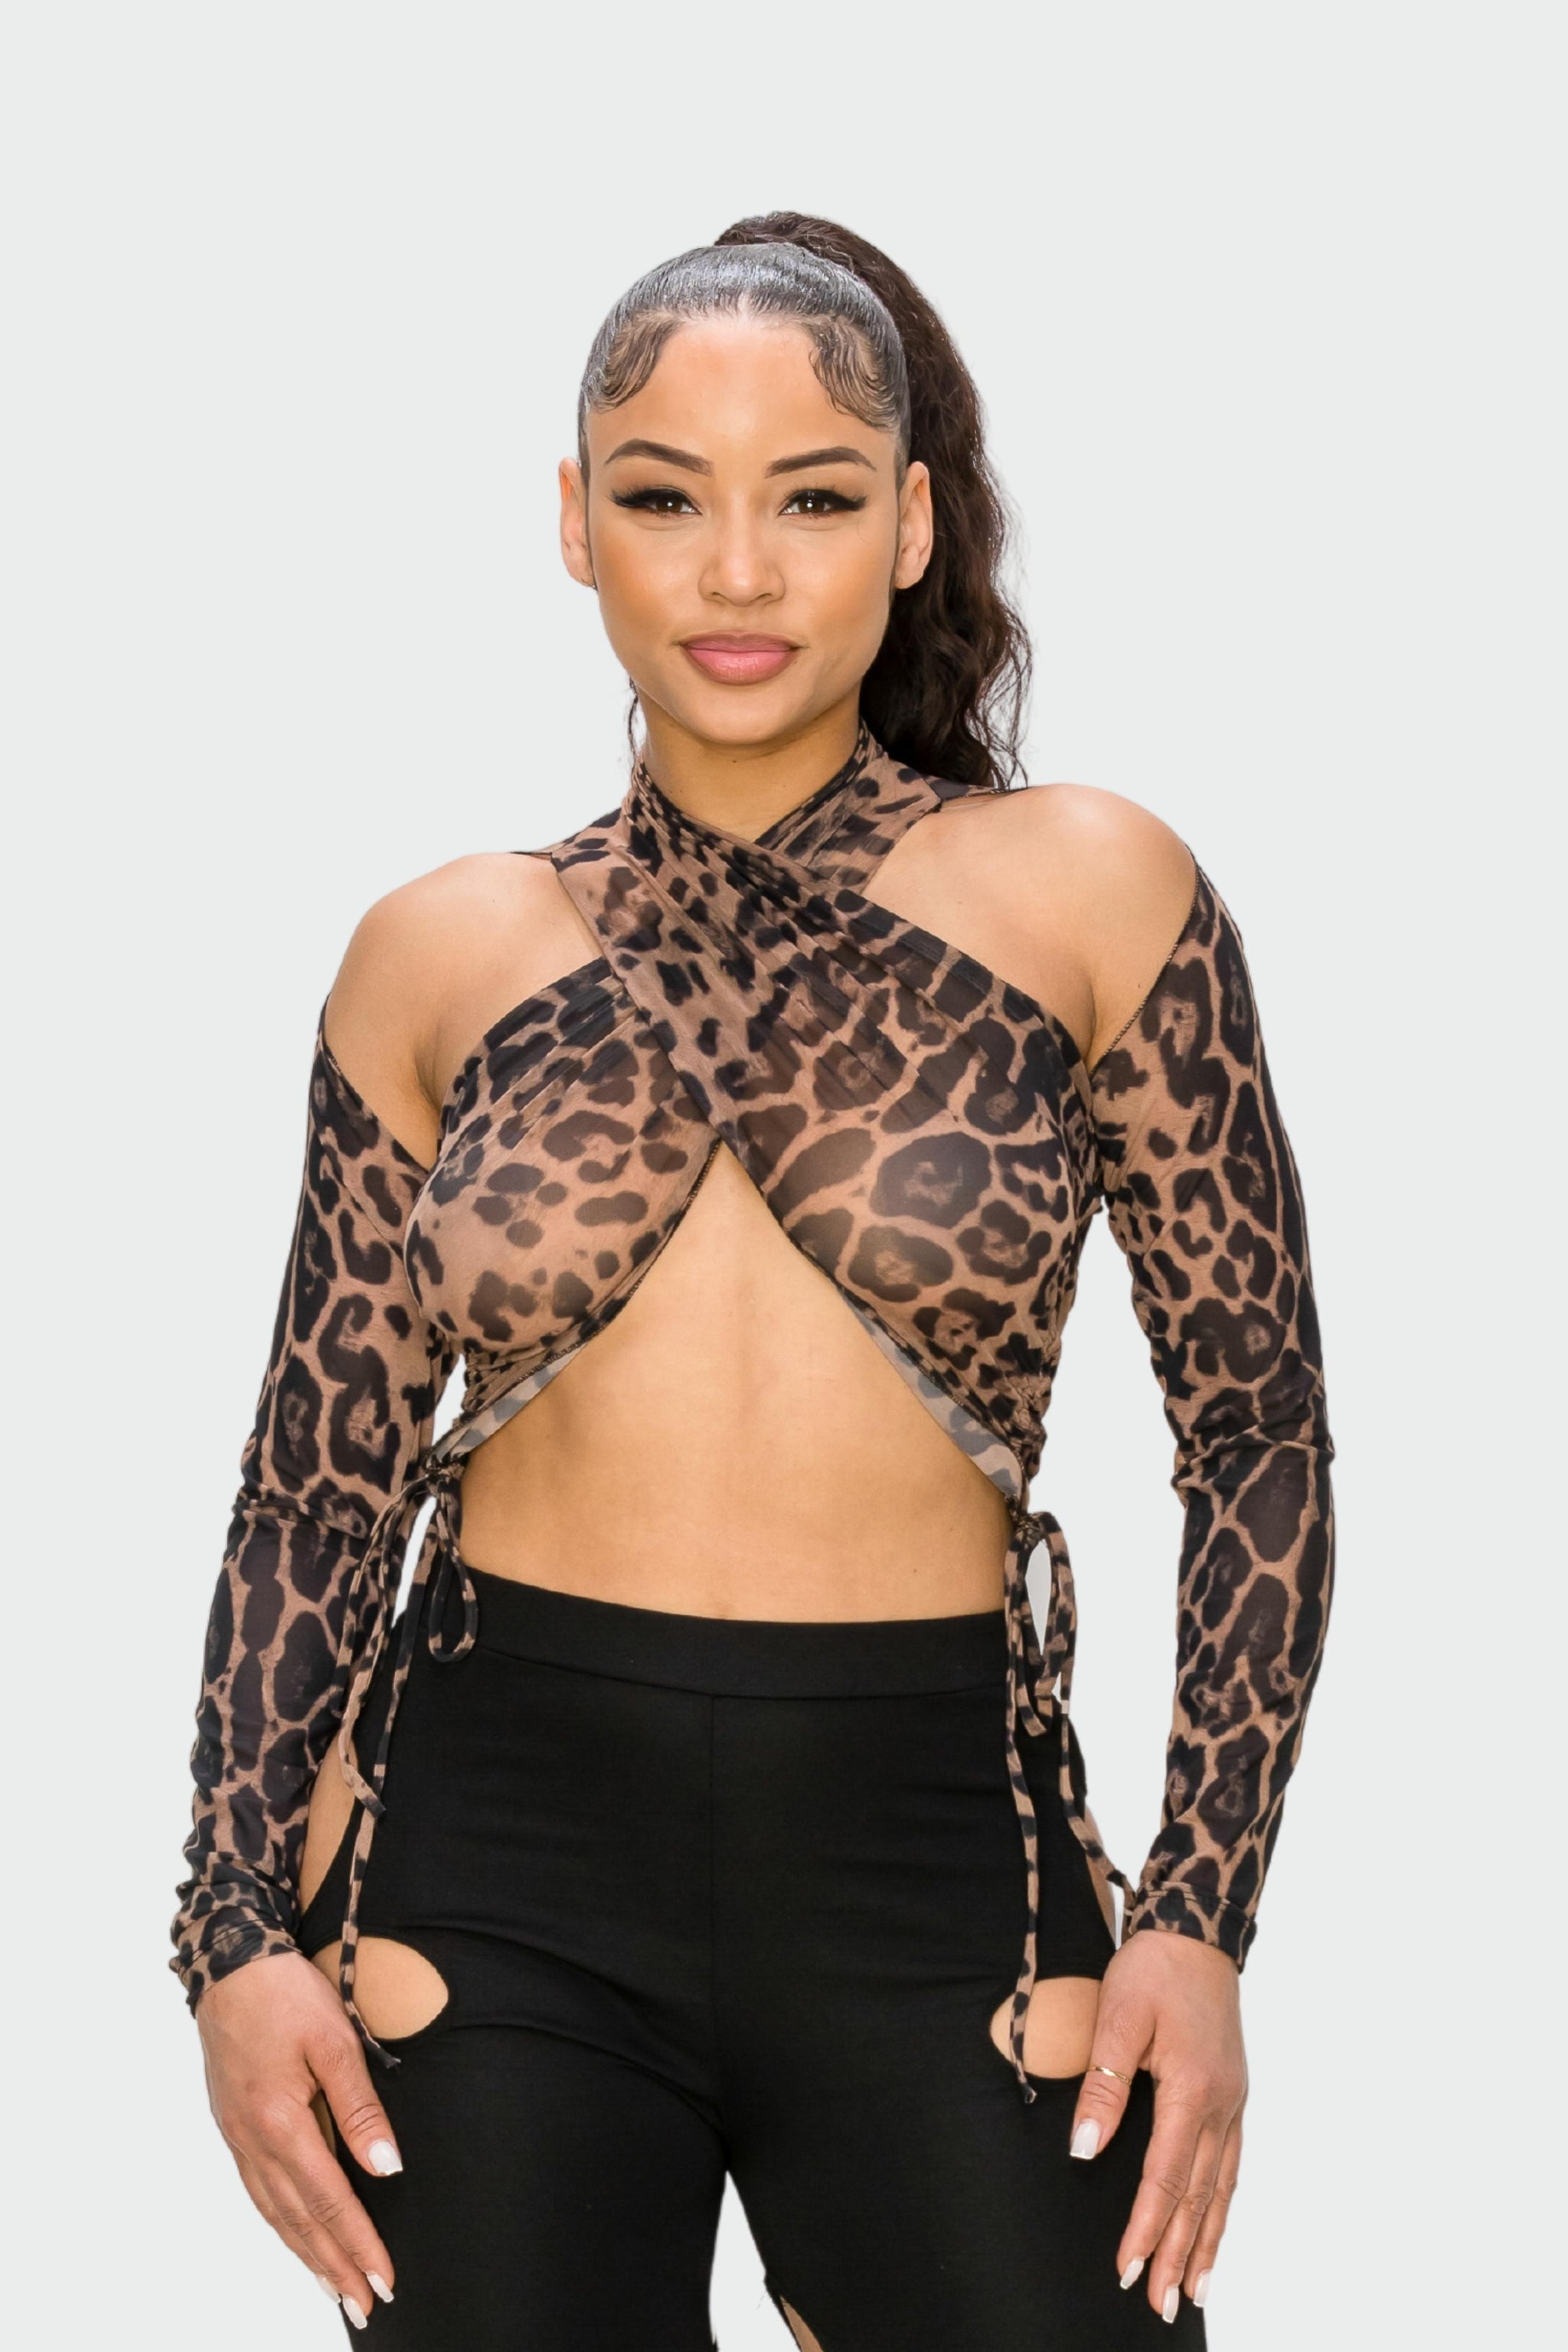 Nude Black Leopard Printed Crop Mesh Top - Heny Star